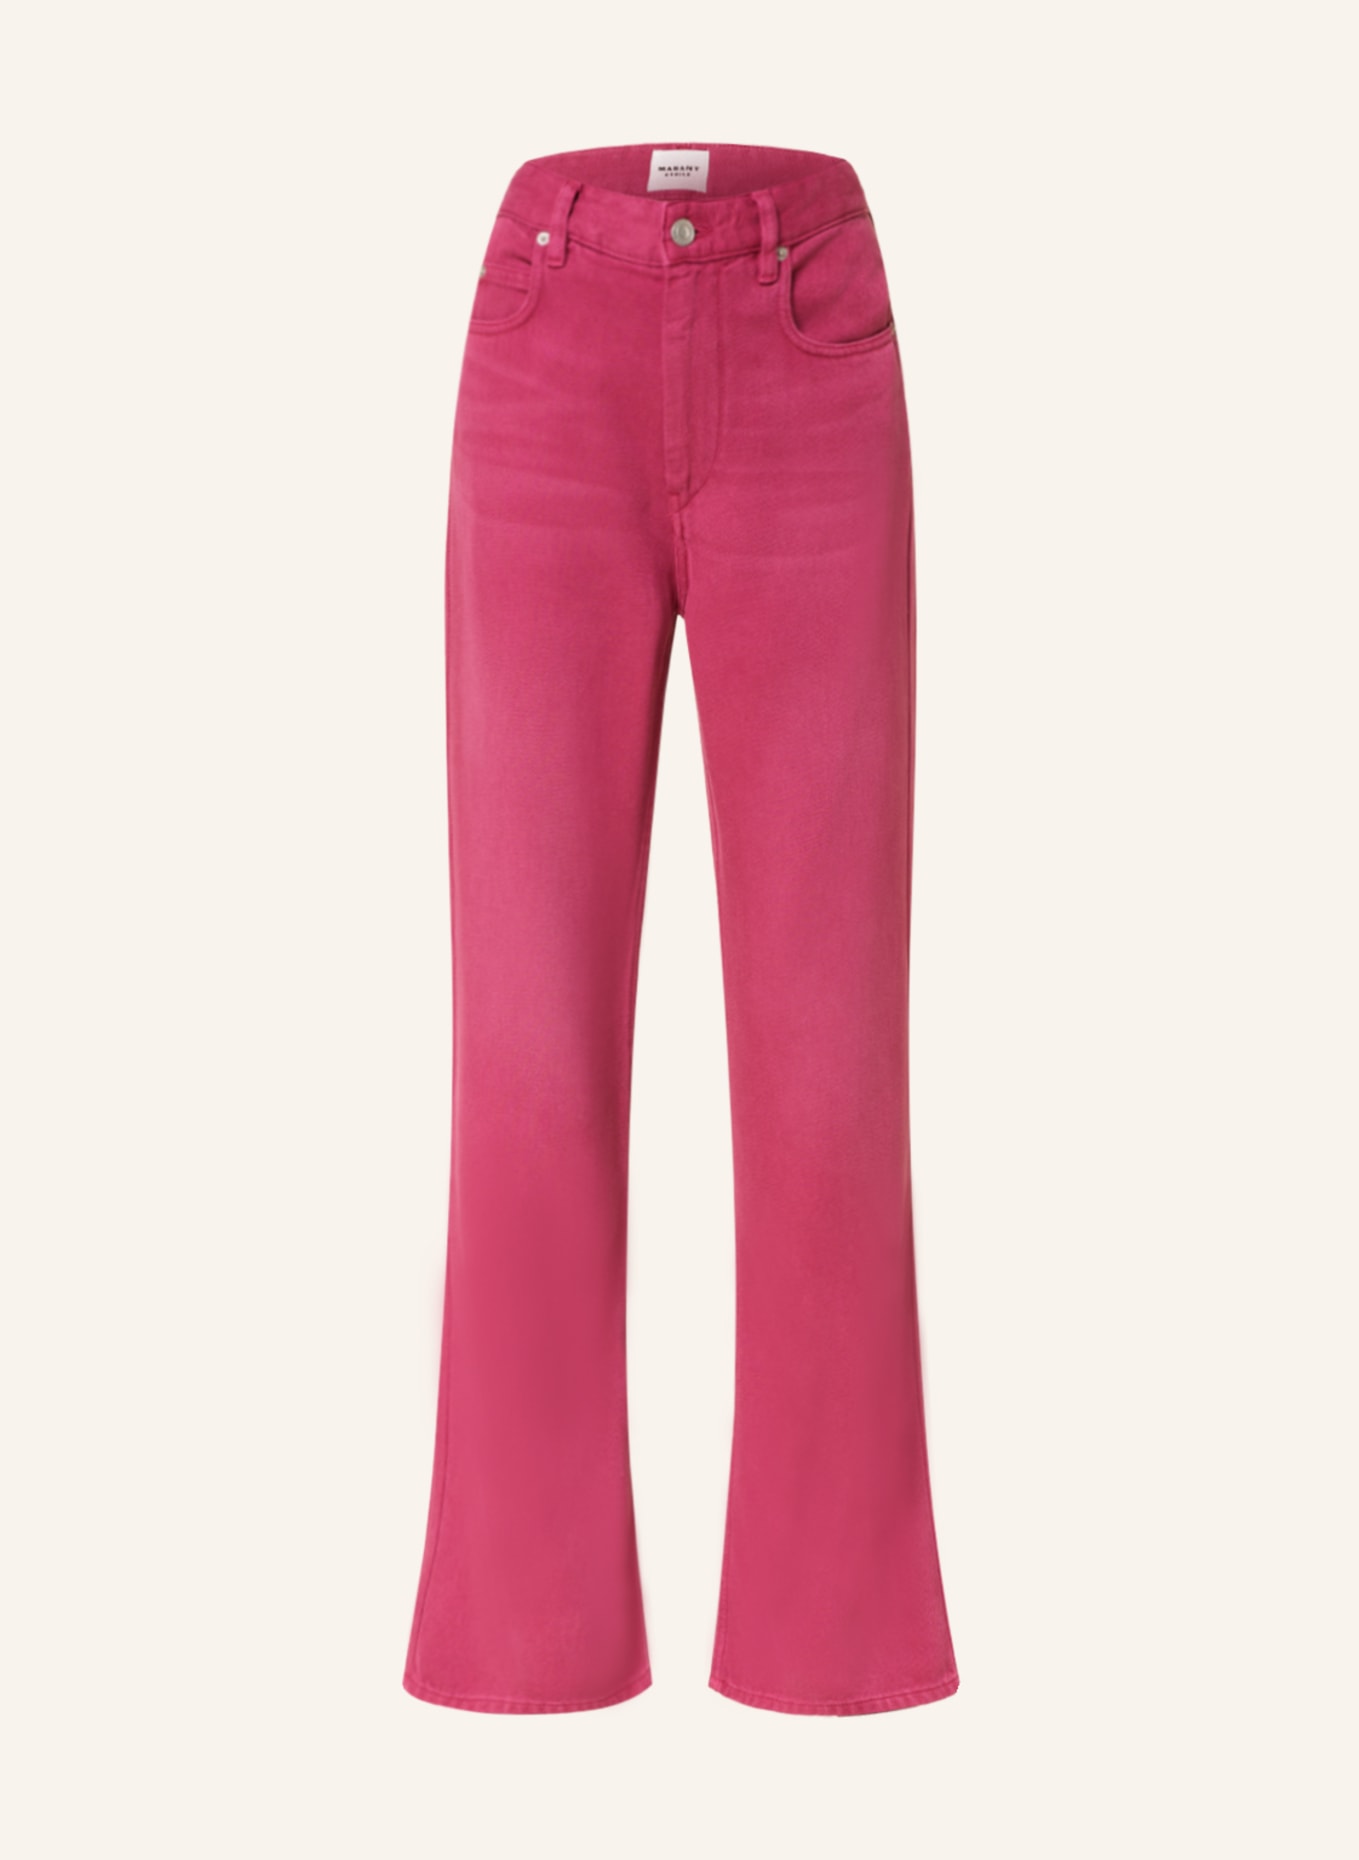 ISABEL MARANT ÉTOILE Flared jeans BELVIRA in 40ry raspberry | Breuninger